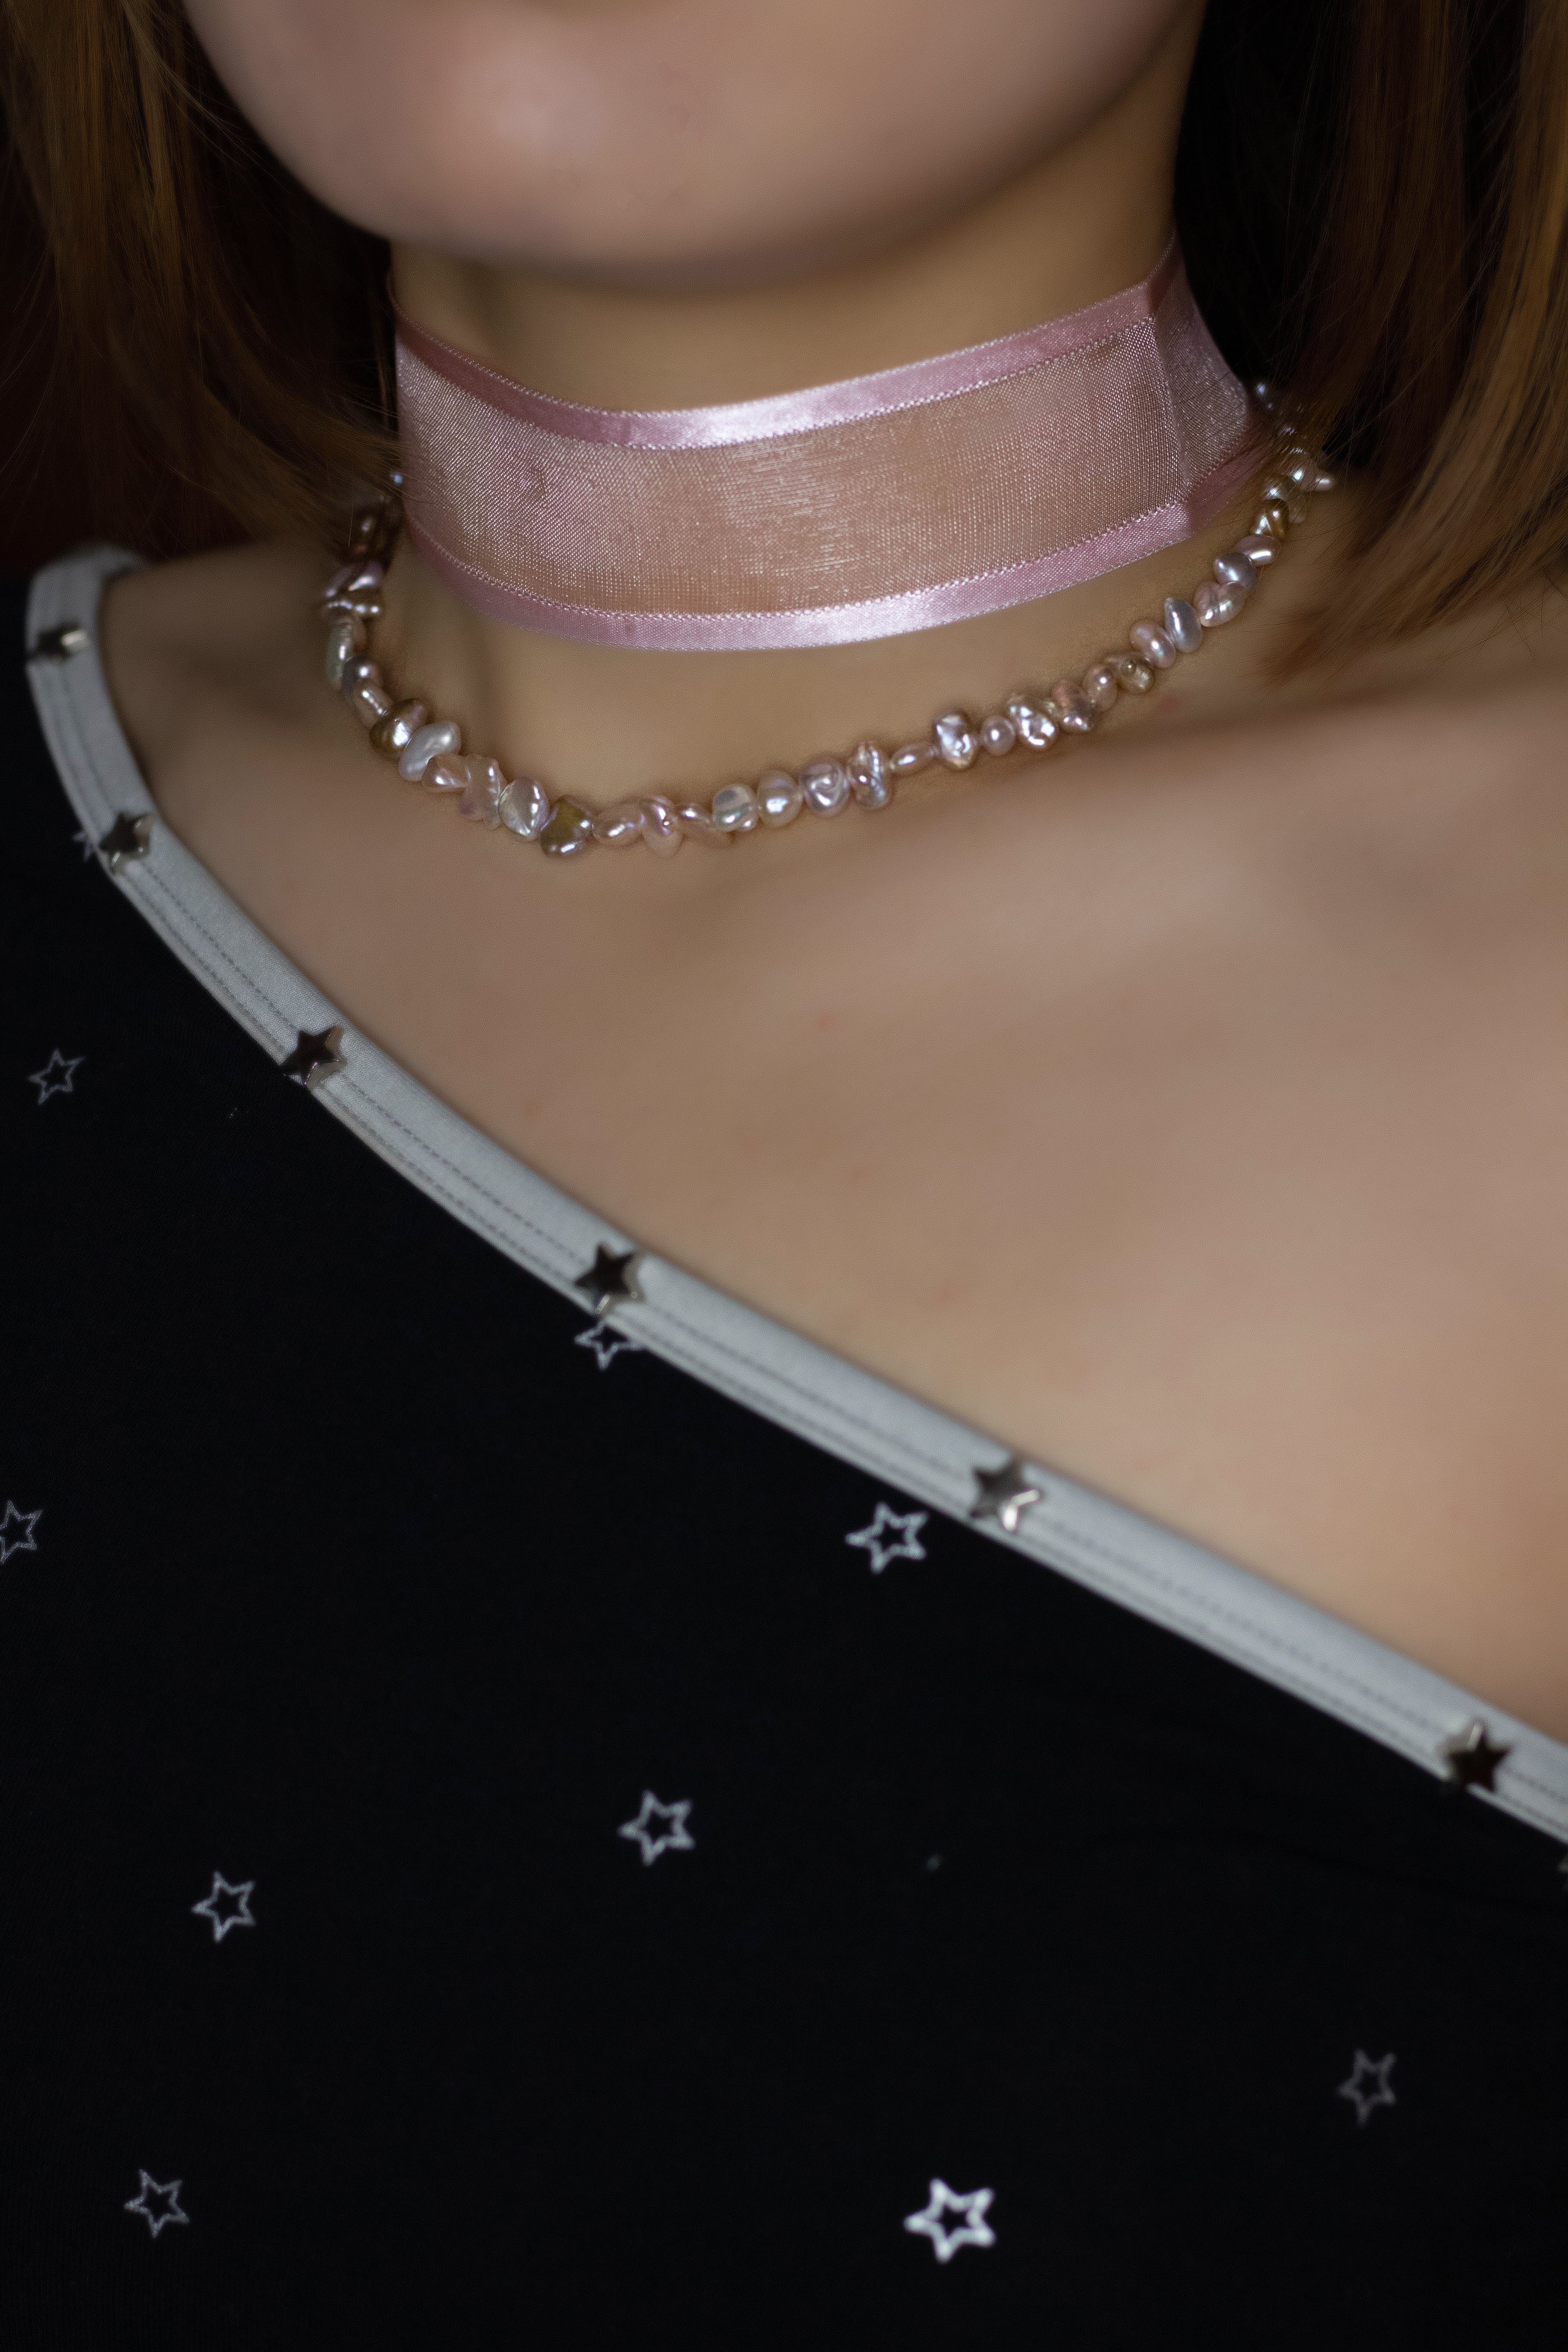 Classique Collier de Perles et Bracelet Violet